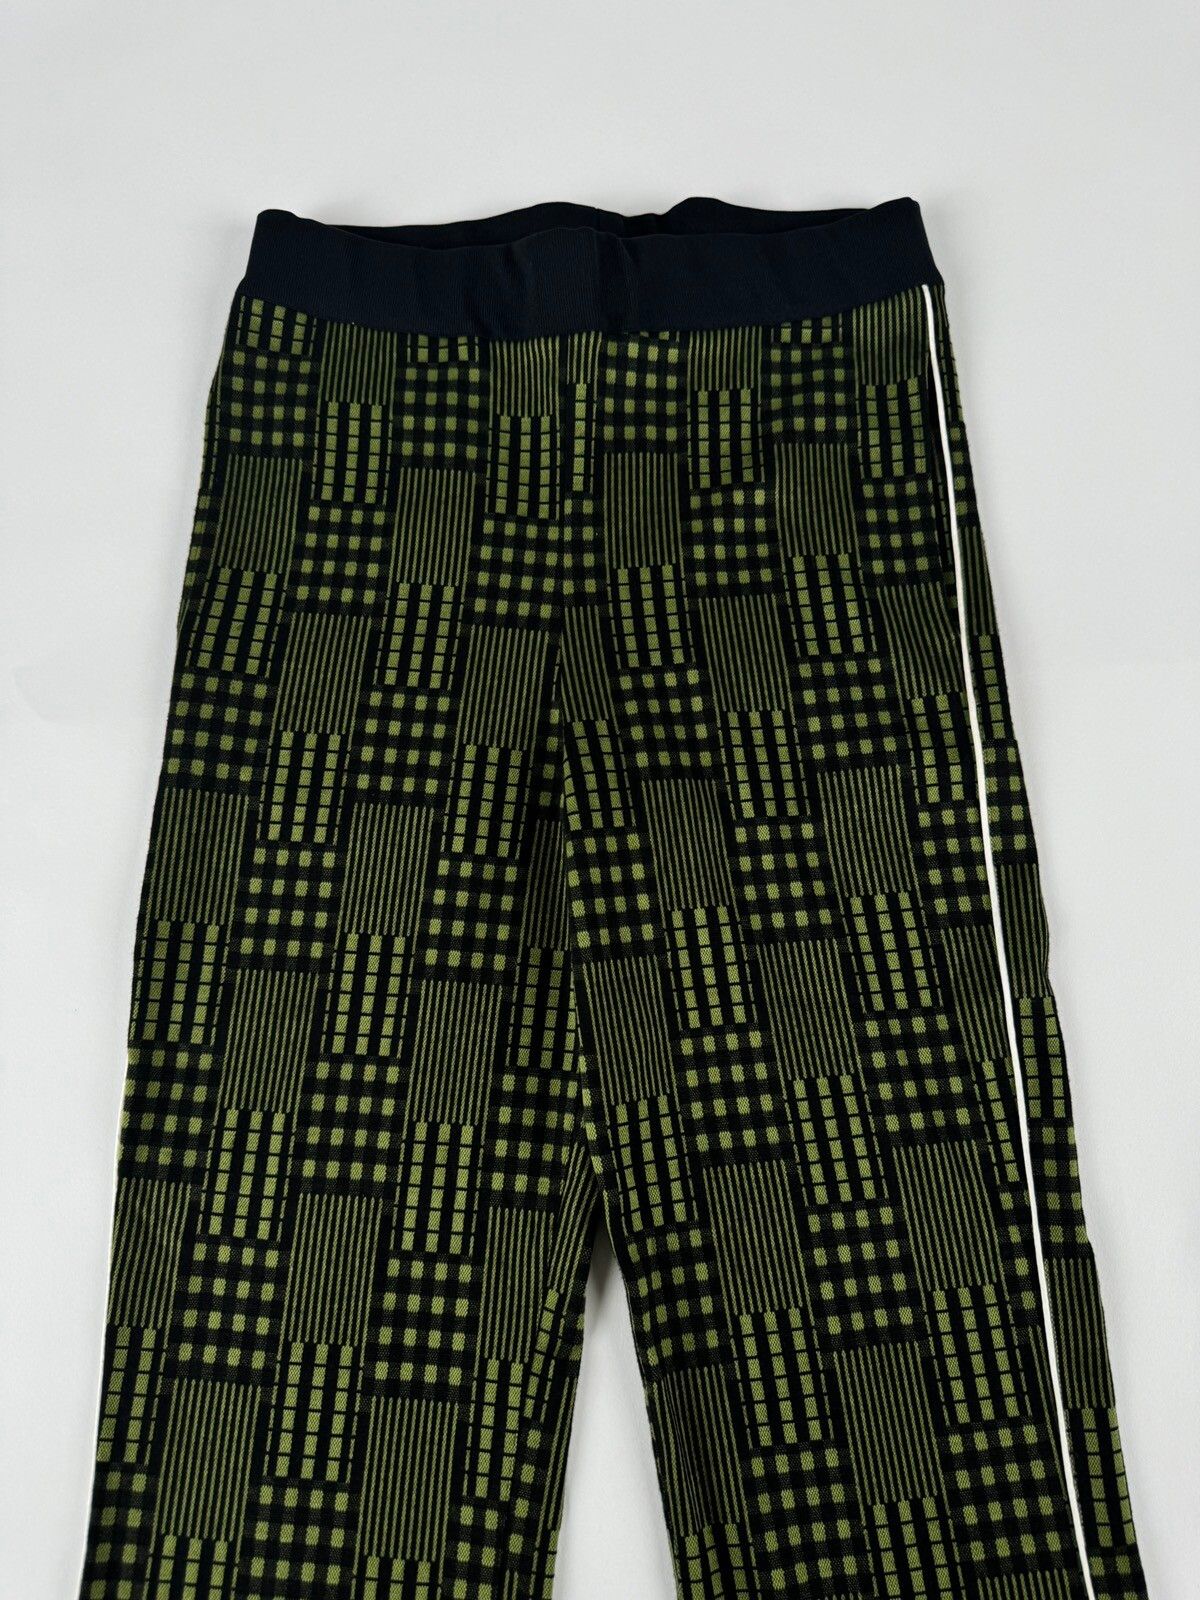 Marni Marni Striped Jersey Trousers Size US 30 / EU 46 - 3 Thumbnail